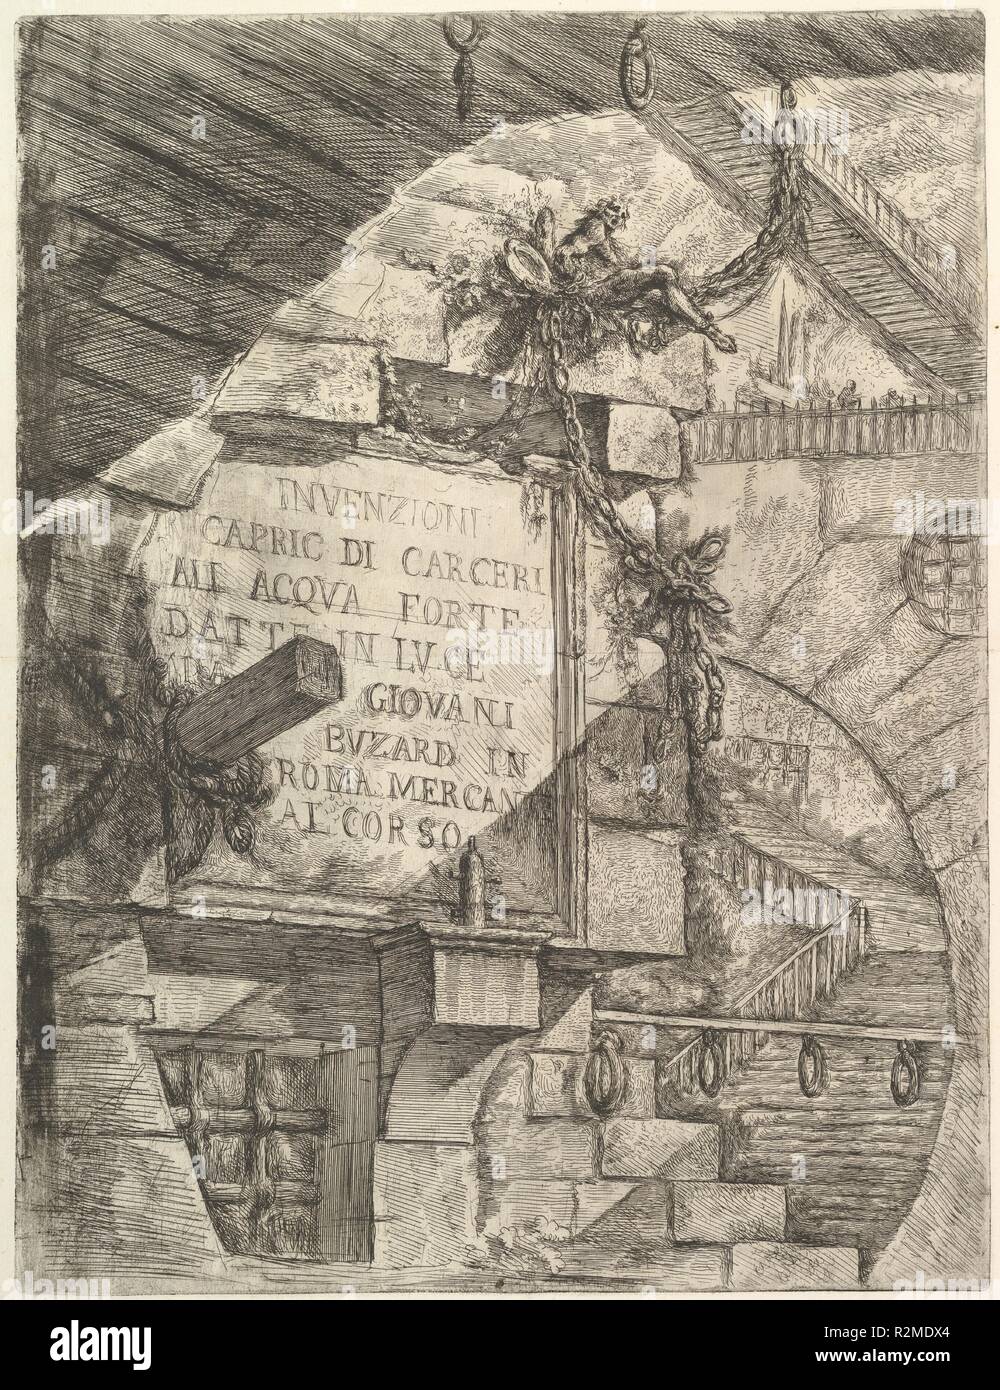 Title Page, from Carceri d'invenzione (Imaginary Prisons). Artist: Giovanni Battista Piranesi (Italian, Mogliano Veneto 1720-1778 Rome). Dimensions: Sheet: 25 1/16 x 19 7/16 in. (63.6 x 49.4 cm)  Plate: 21 1/2 x 16 5/16 in. (54.6 x 41.4 cm). Publisher: Giovanni Bouchard (French, ca. 1716-1795). Series/Portfolio: Carceri (Prisons). Date: ca. 1749-50. Museum: Metropolitan Museum of Art, New York, USA. Stock Photo